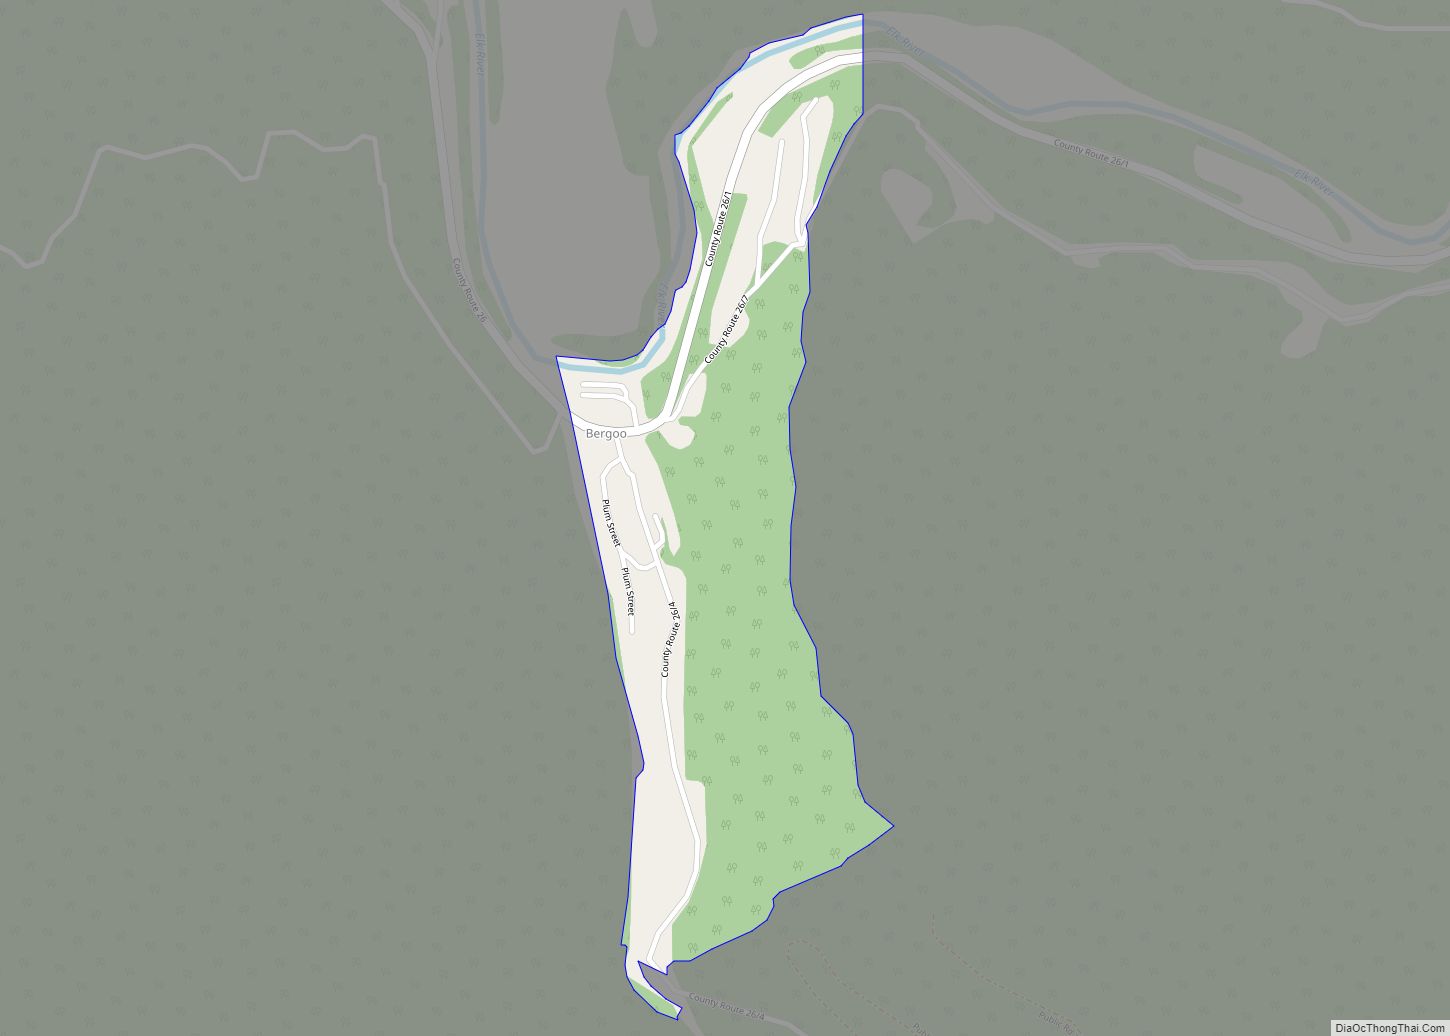 Map of Bergoo CDP